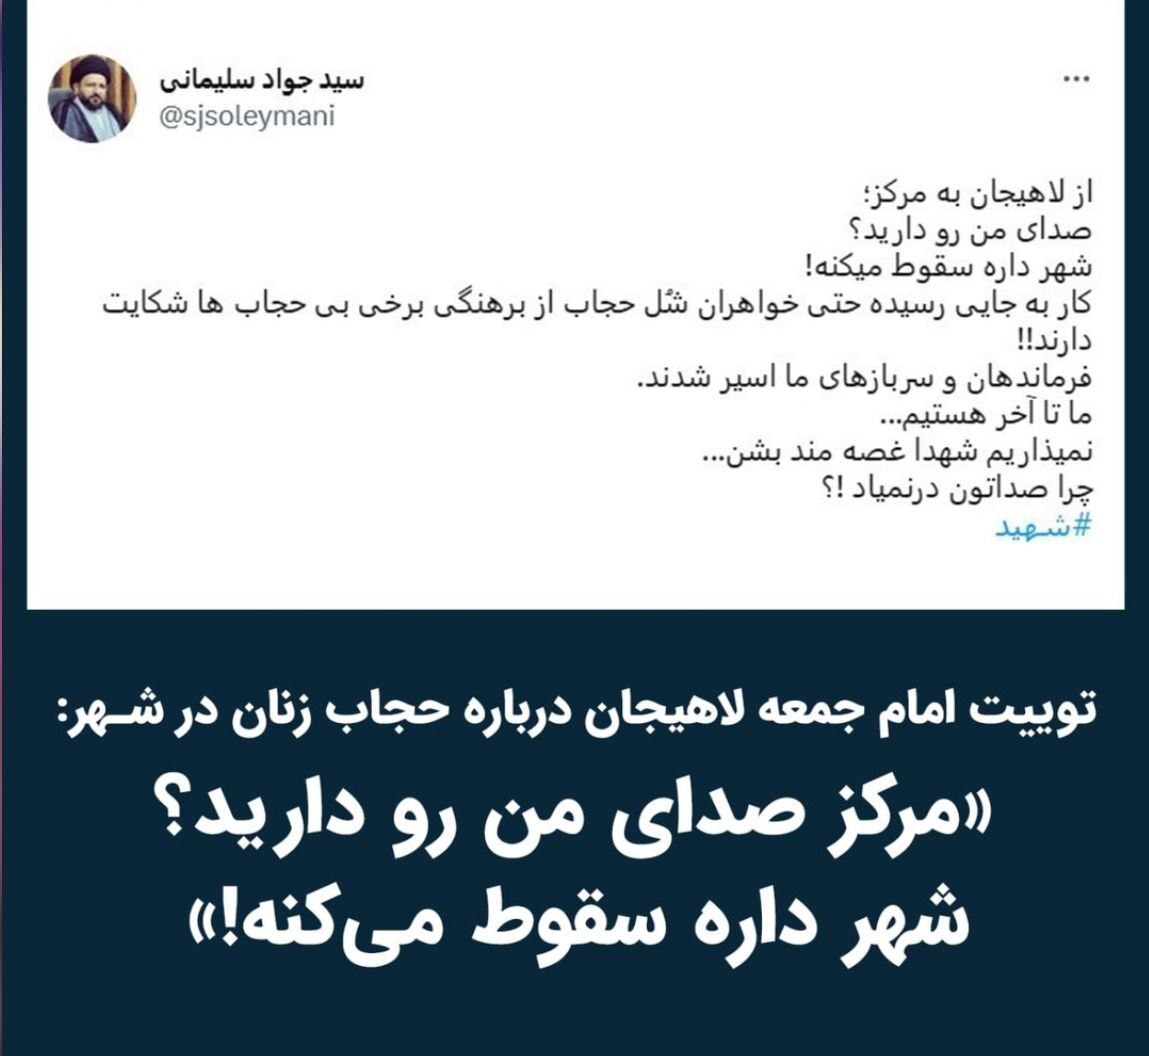 10 جمله پیشنهادی به امام جمعه لاهیجان که به مرکز مخابره کند